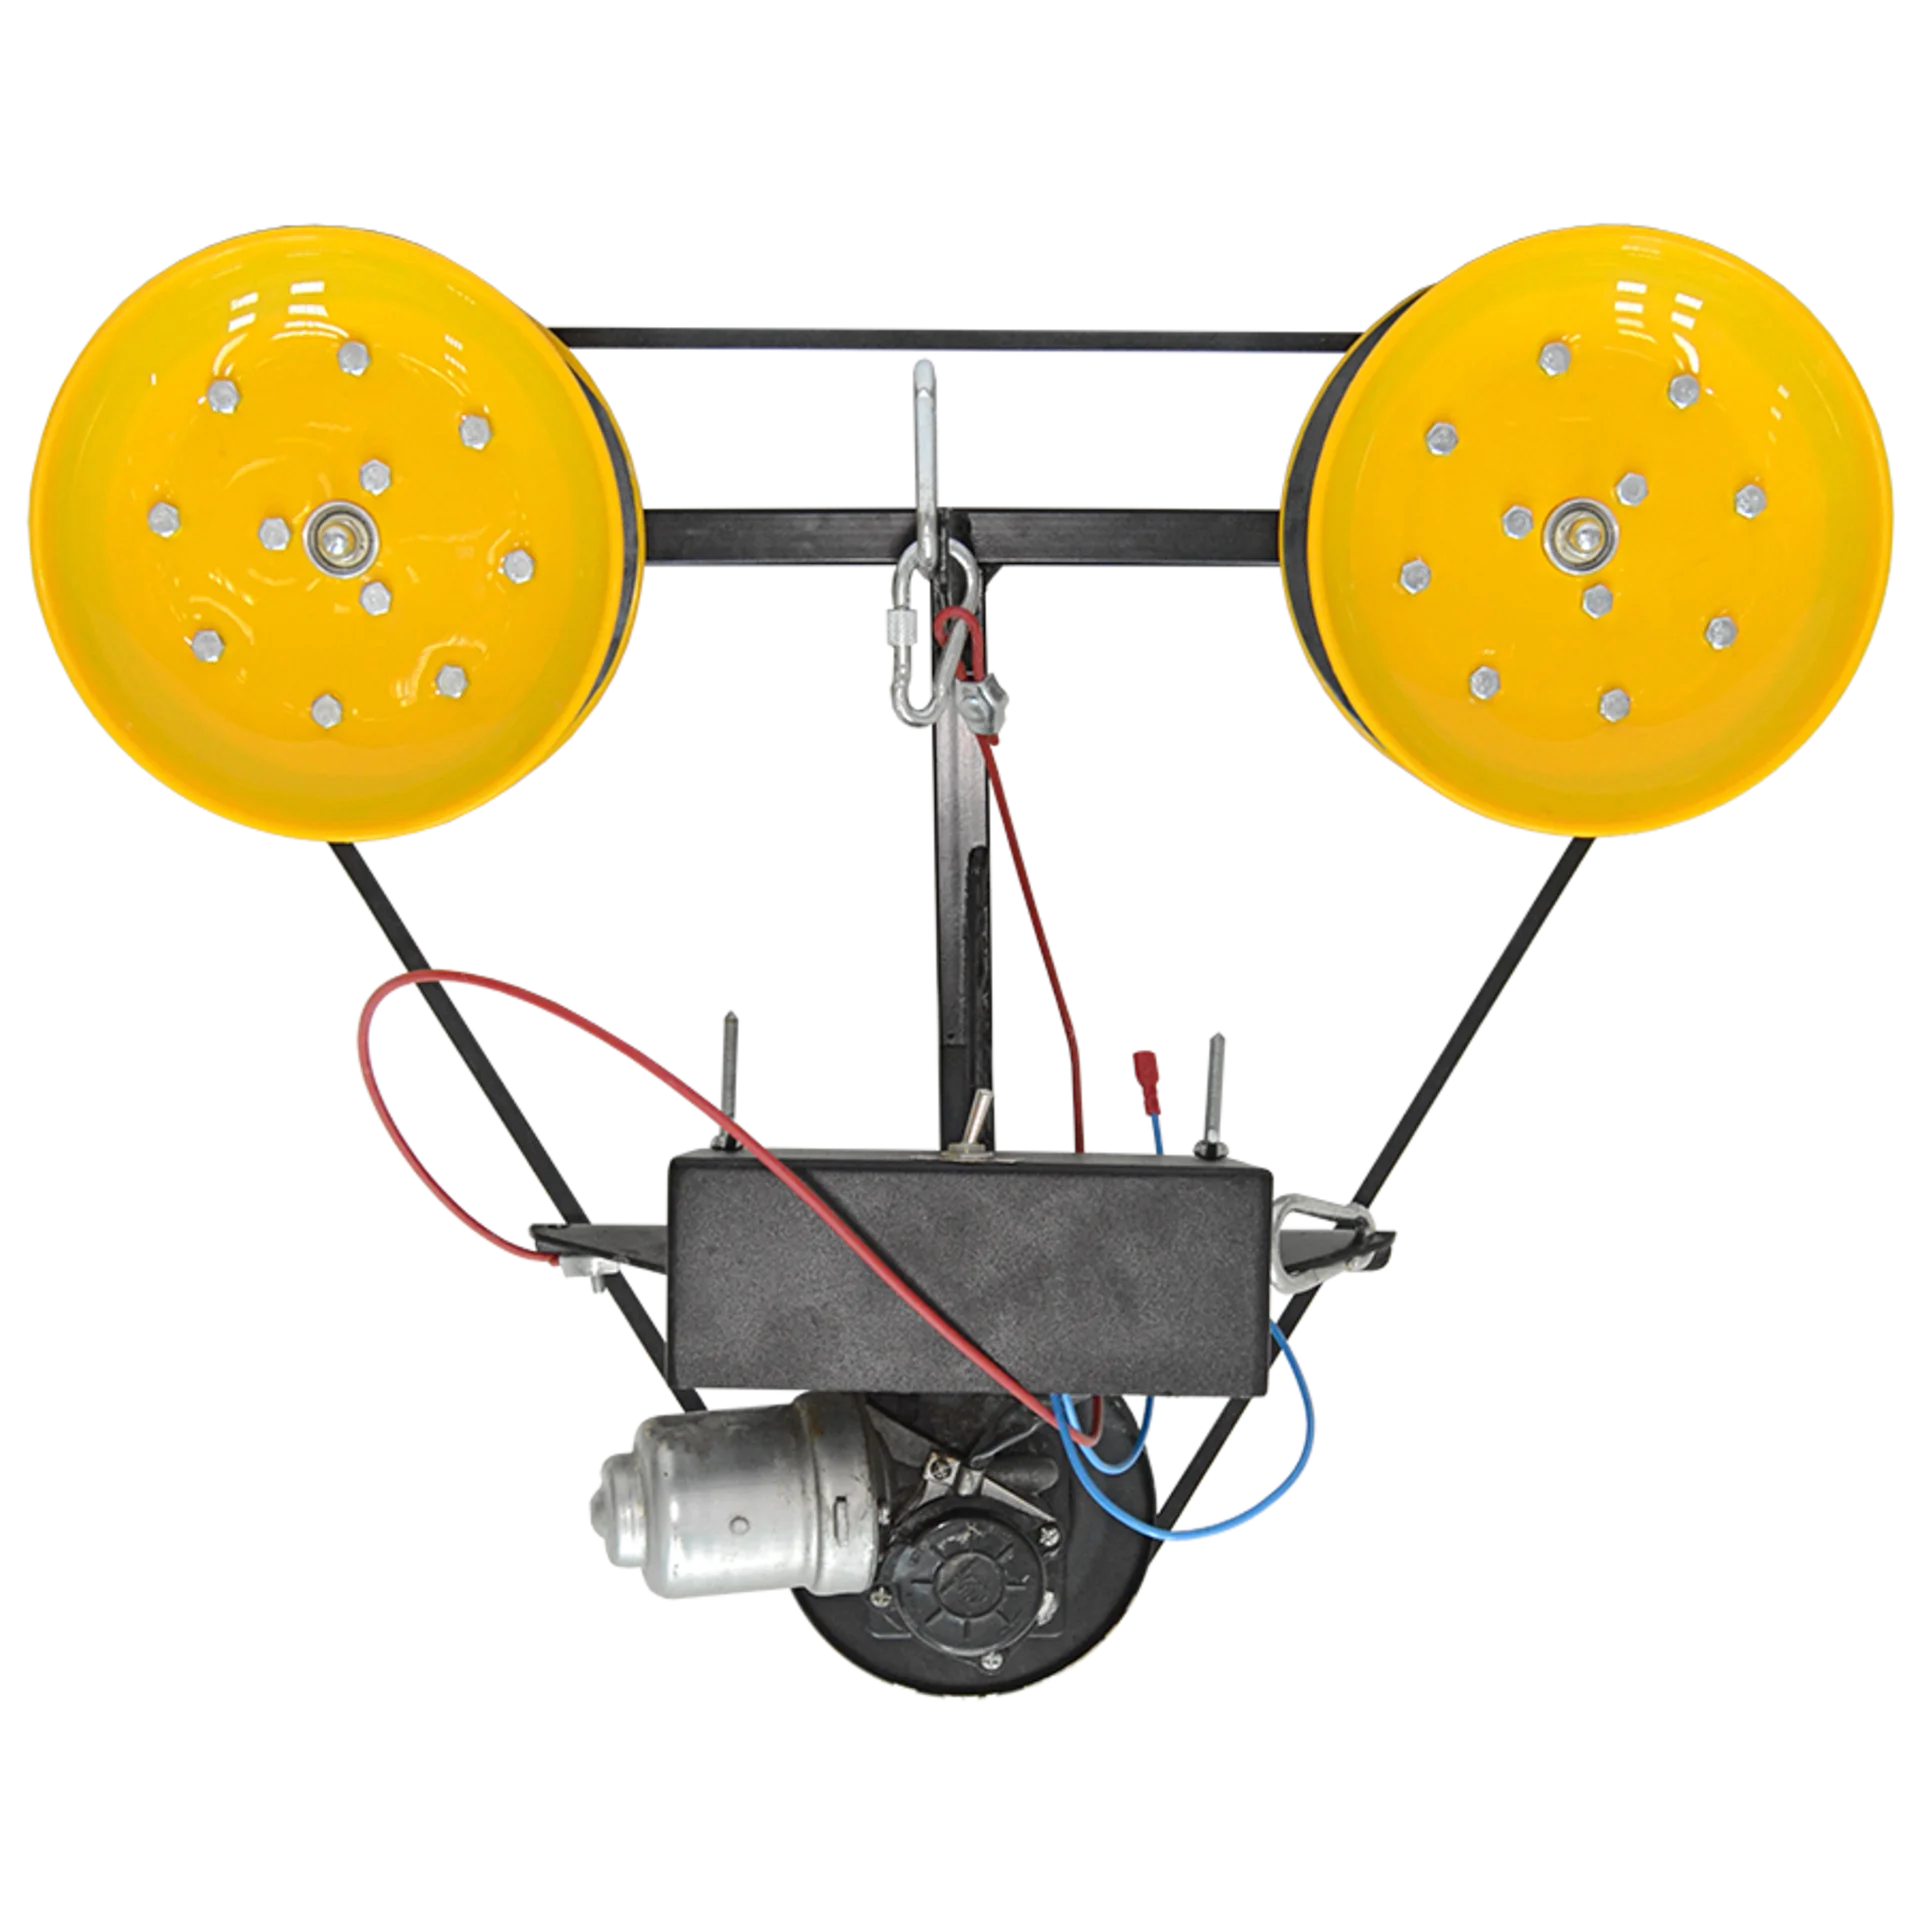 Тросоход- устройство, снабженное автономным источником питания, предназаченодля протяжки воздушных линий связи по существующим (ранее натянутым тросам, кабелями проводам) конструкциям